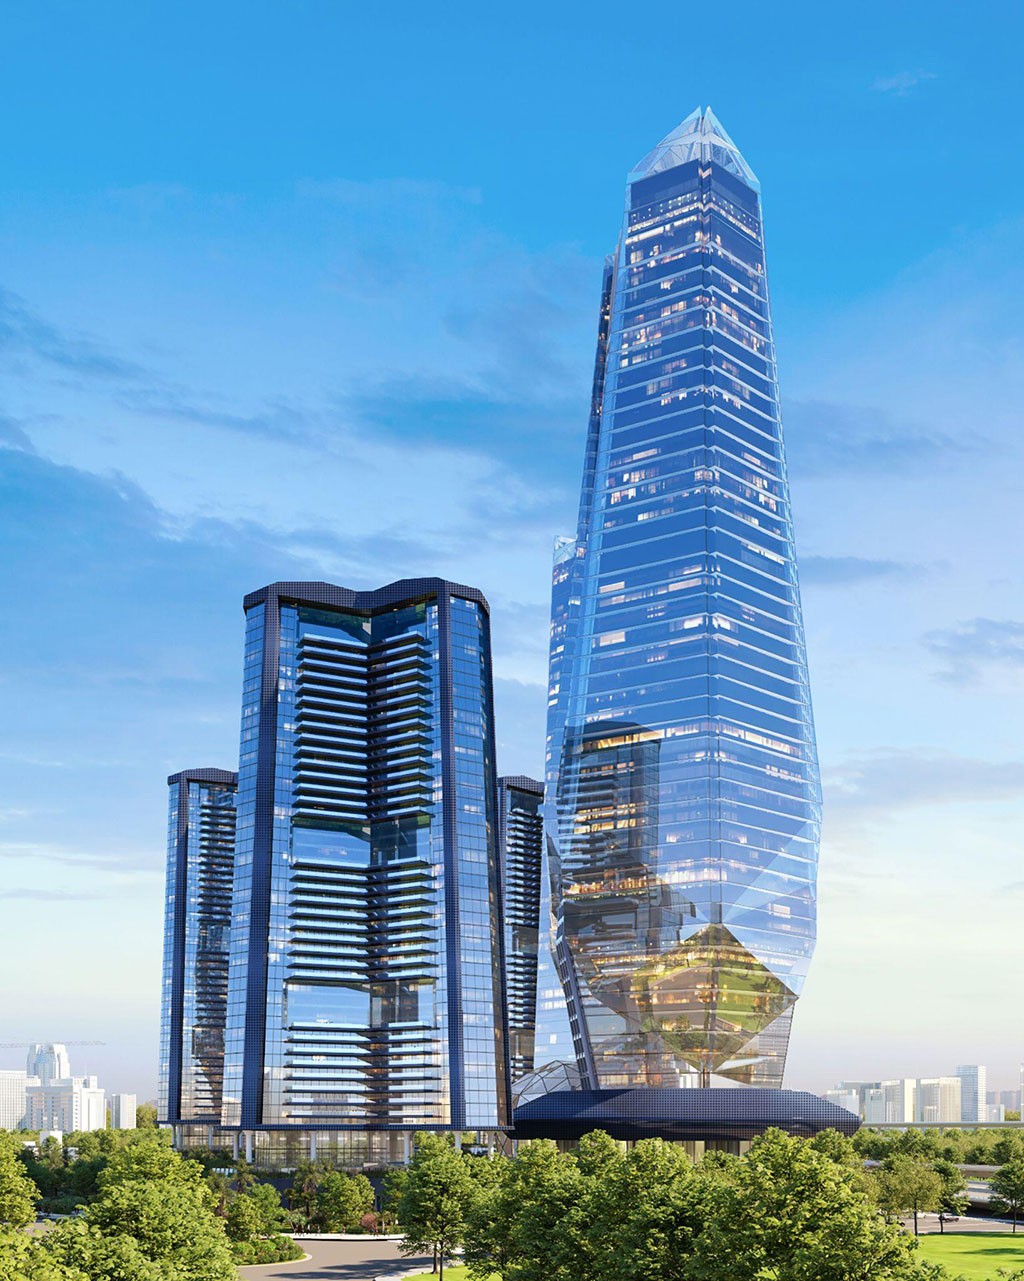 Sở hữu tòa tháp có chiều cao đứng thứ 3 Việt Nam (gần 300m), dự án Khu phức hợp Sunshine Wonder Tower là sự đáp ứng hoàn hảo cho toàn bộ các nhu cầu về làm việc, nghỉ dưỡng, giải trí và mua sắm thông minh của nhóm khách hàng End-User trong giới doanh nhân, nghiệp chủ, các Tập đoàn đa quốc gia và tổ chức thương mại quốc tế…, trong tương lai sẽ là điểm đón hàng đầu của xu thế dịch chuyển làn sóng đầu tư Việt Nam và khu vực.